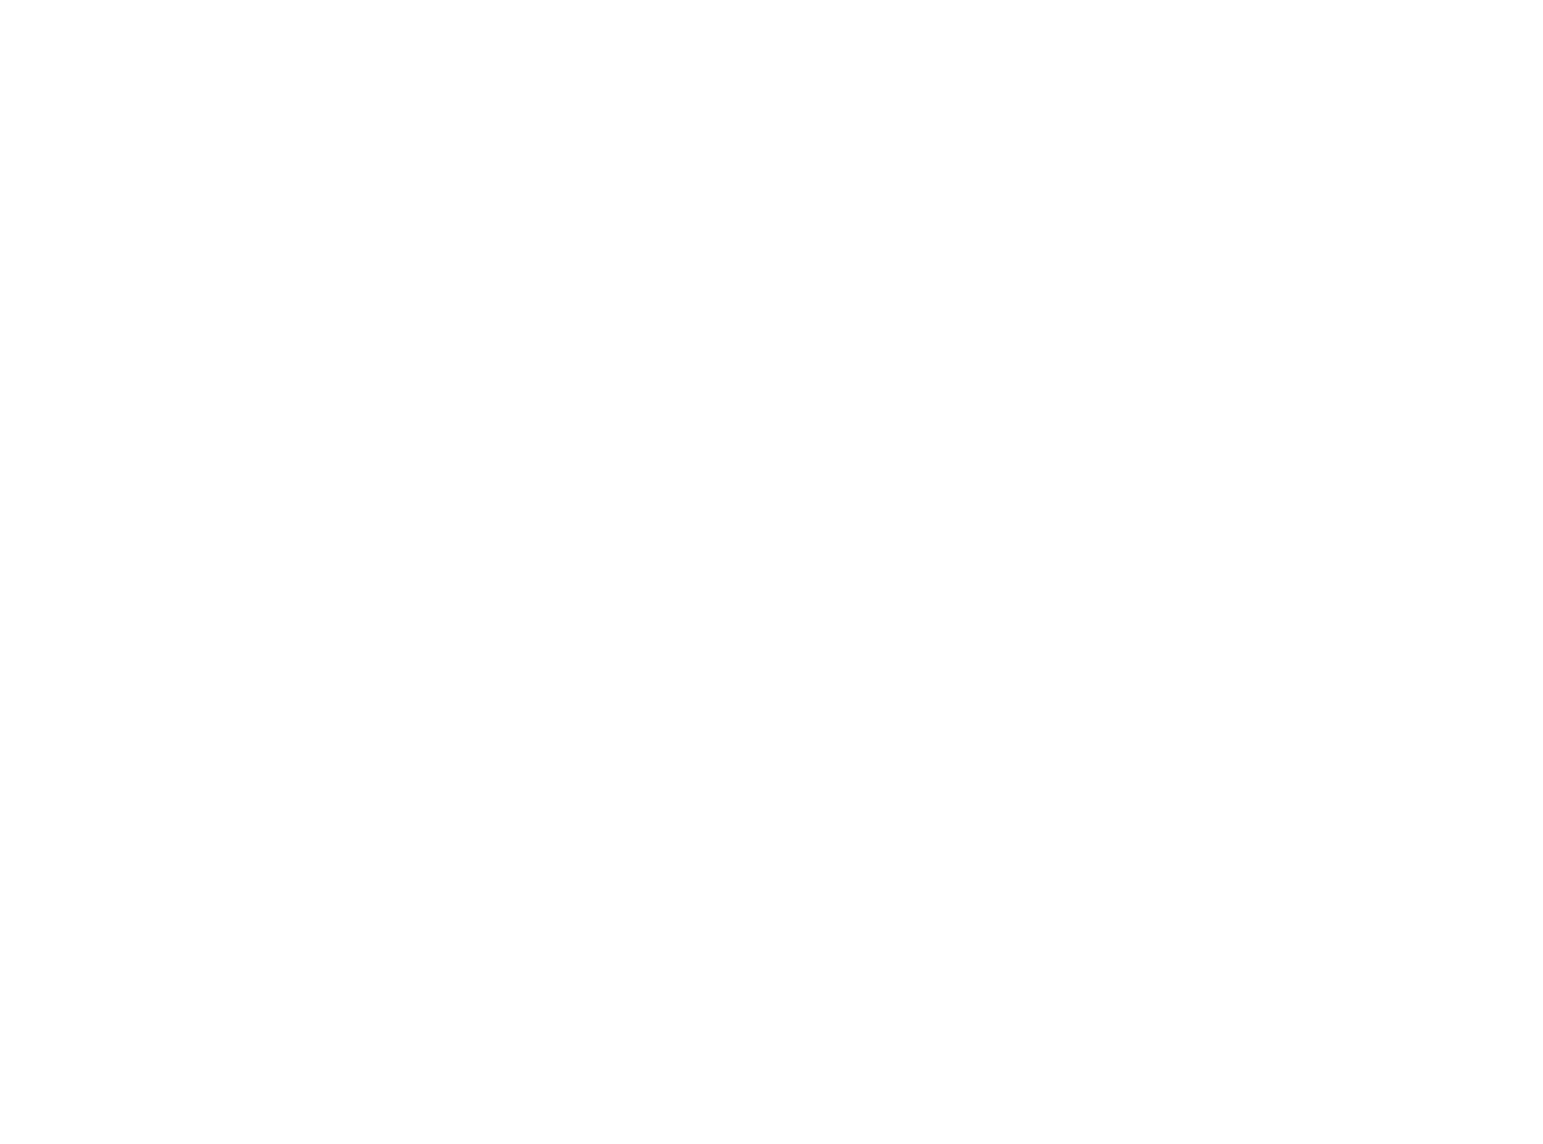 enVVeno Medical Corporation logo for dark backgrounds (transparent PNG)